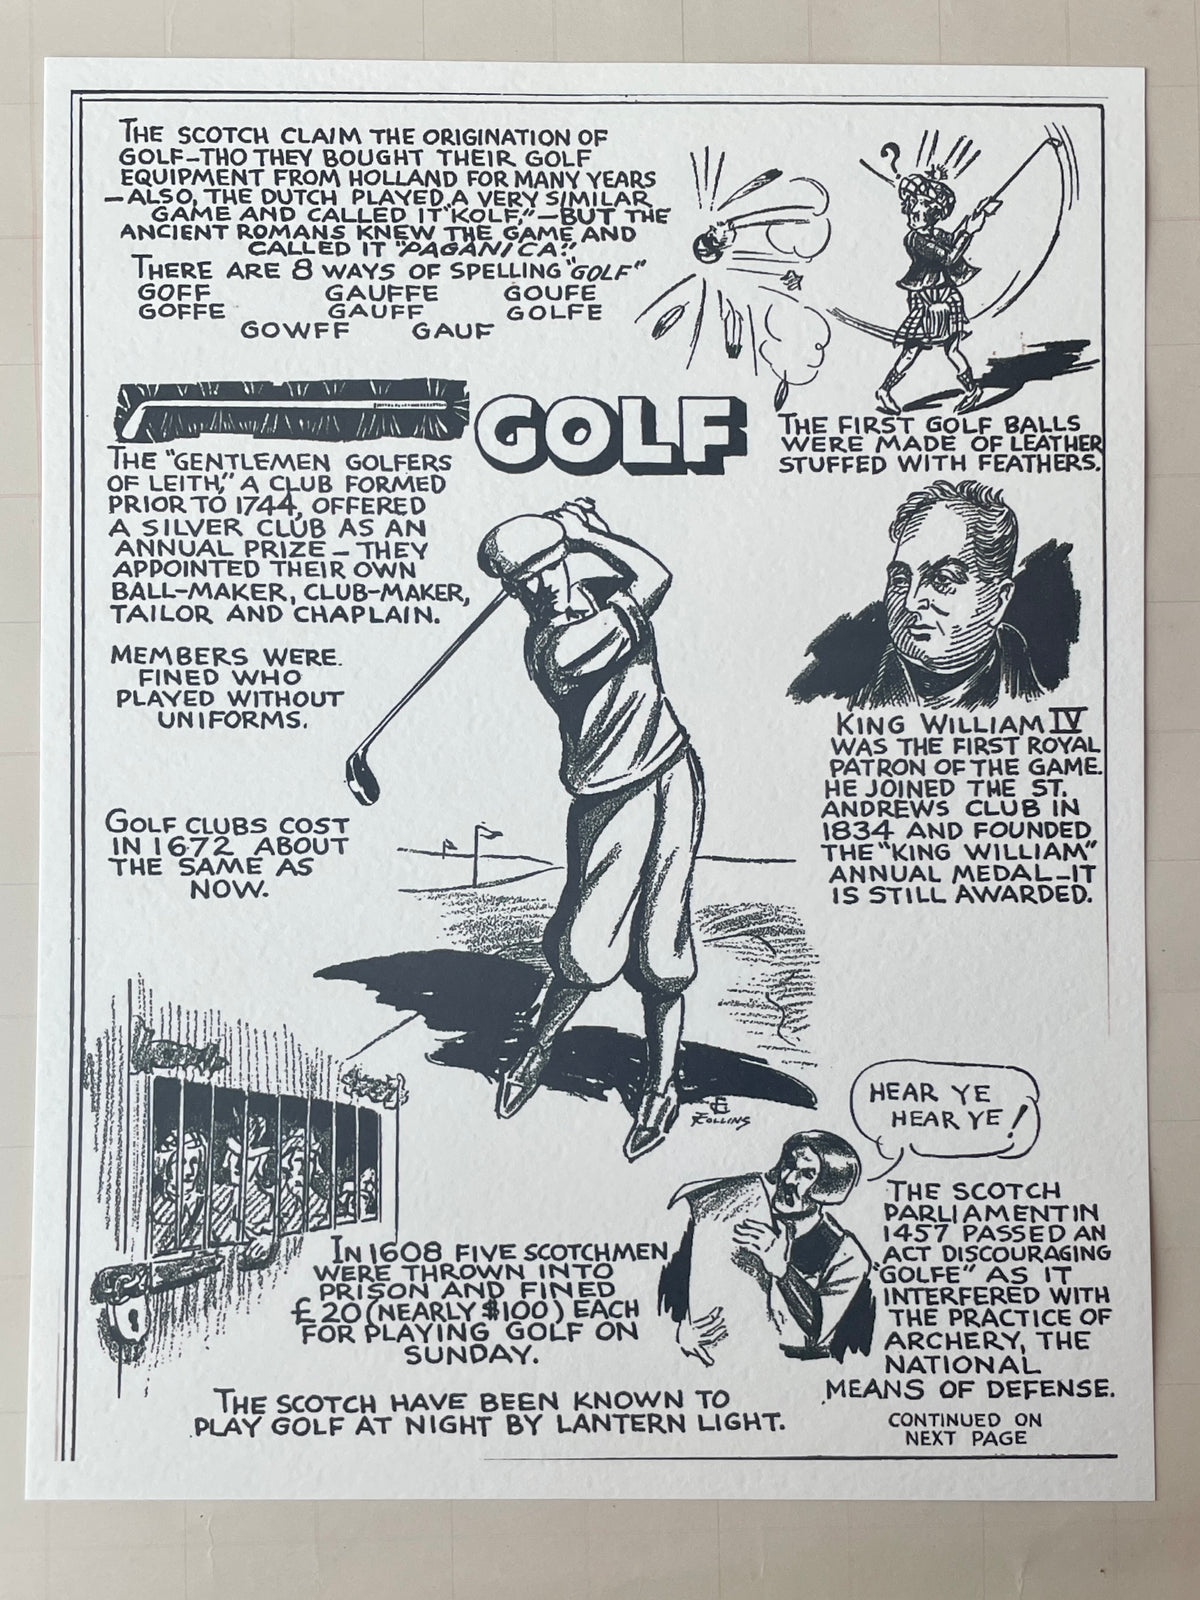 Black Monogram Andrews Golf Kit Monogram - Art of Living - Sports